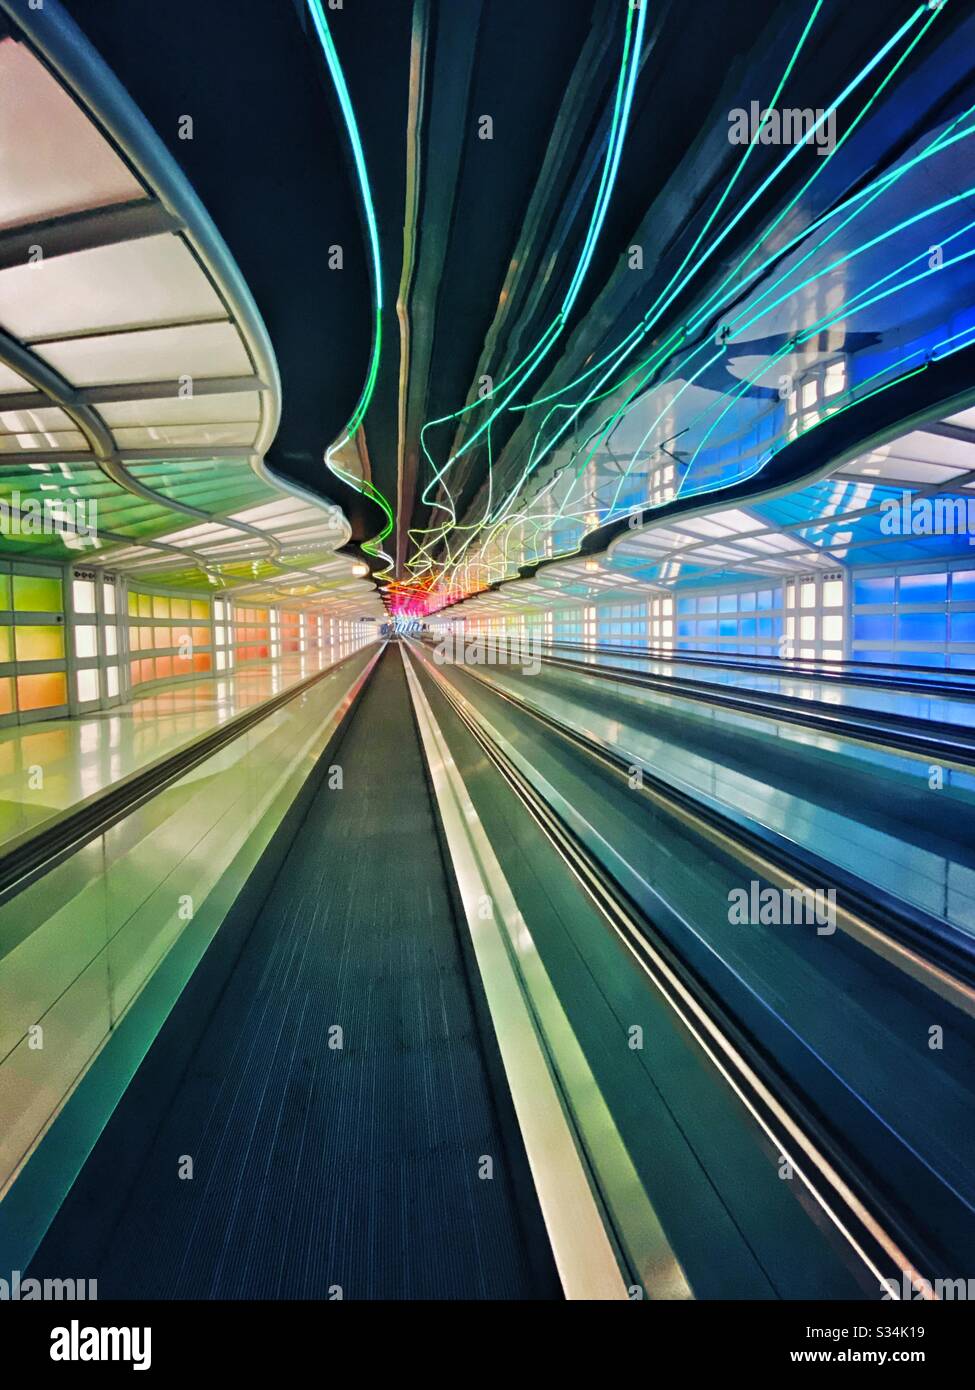 Aéroport international O’Hare. Tunnel entre les concours B et C du terminal Uni avec lumières fluo colorées mobiles et passerelle mobile. Banque D'Images